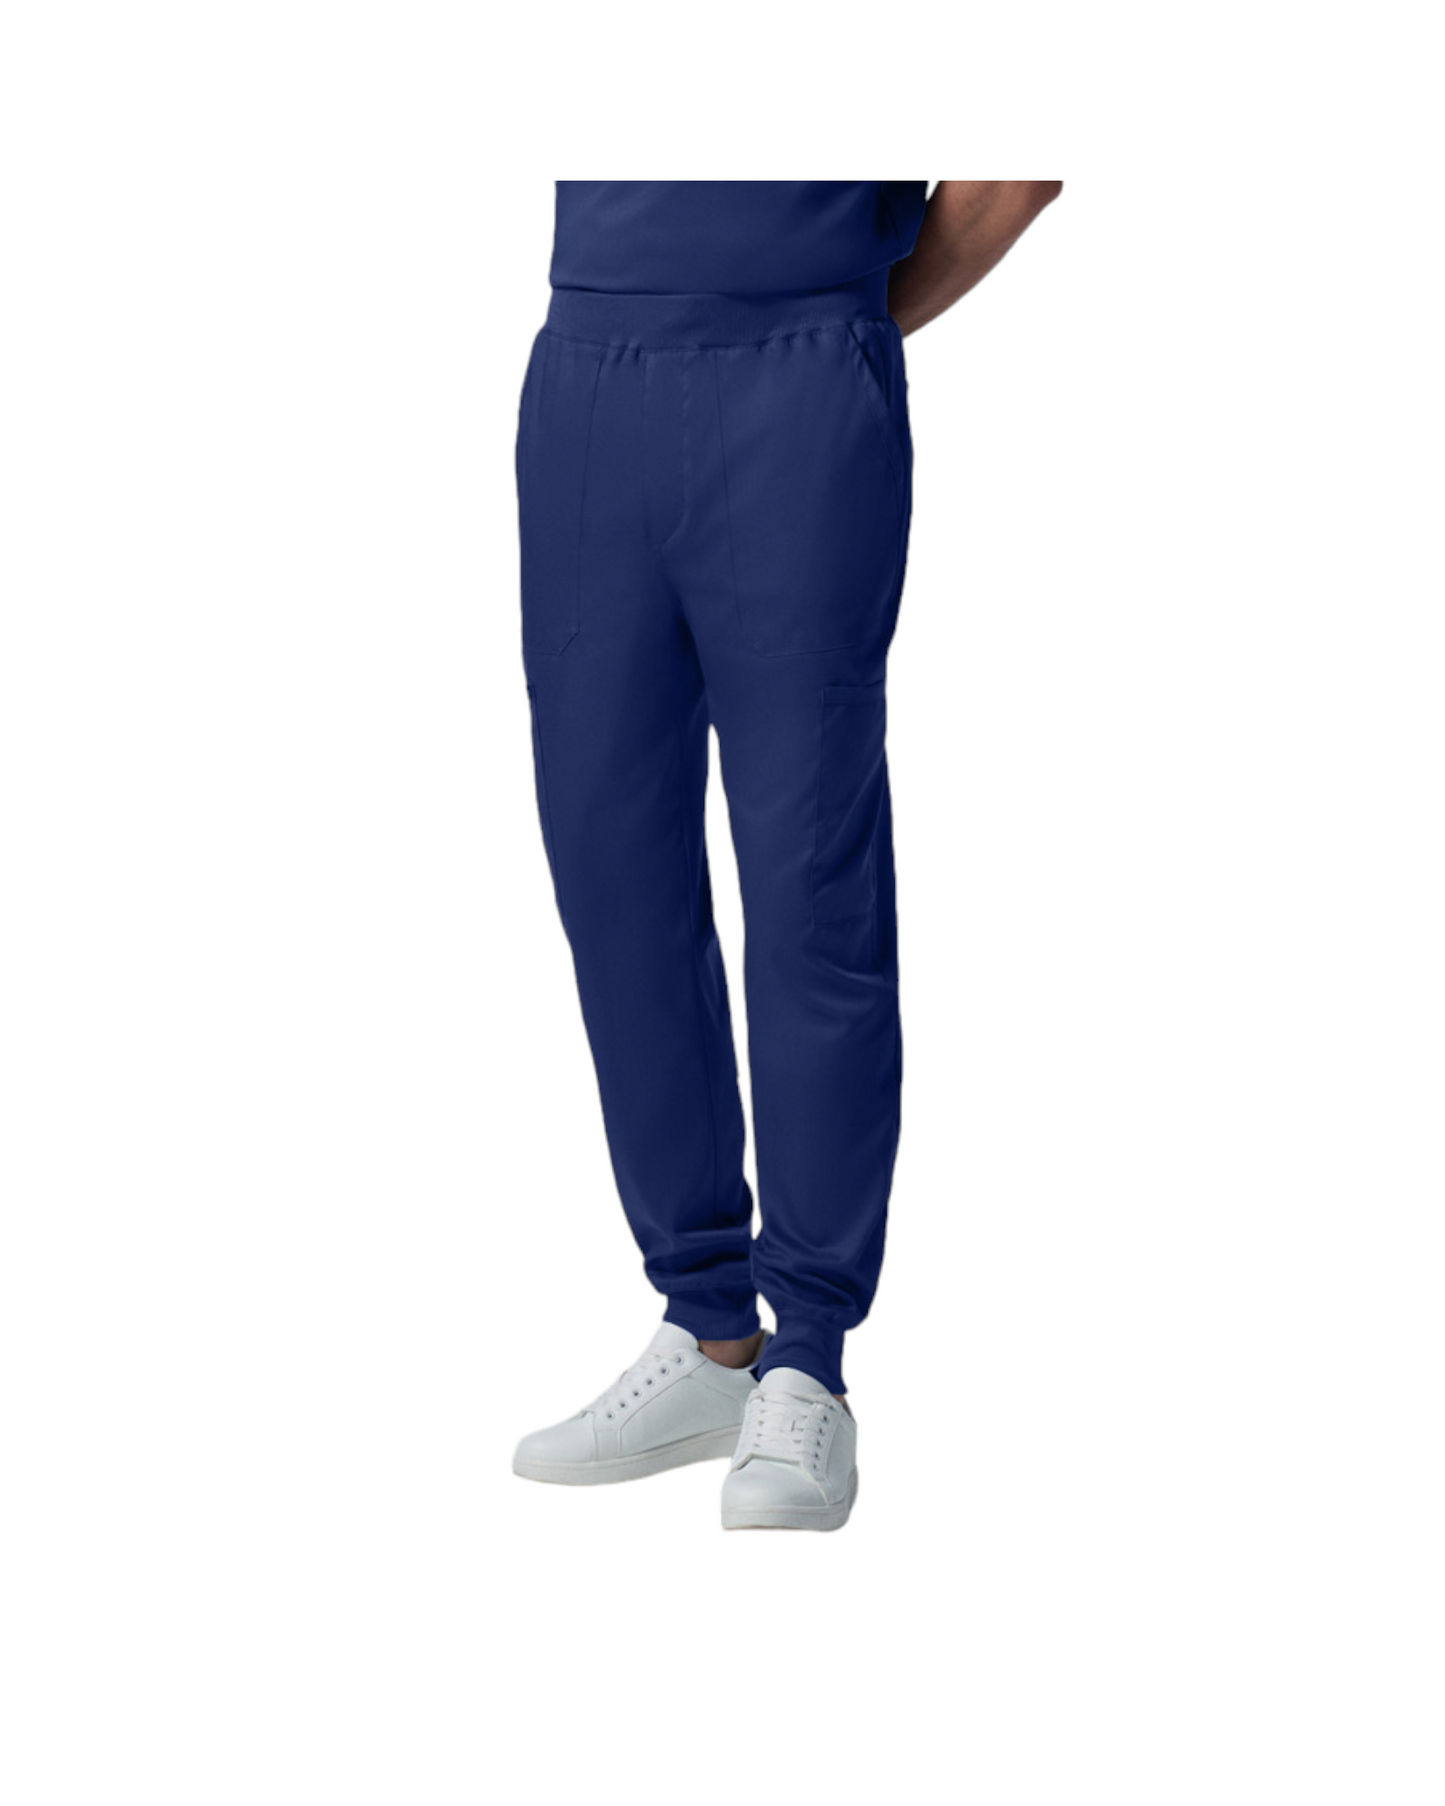 Pantalon jogger pour hommes Landau Proflex #LB407 OS couleur Bleu galaxie 